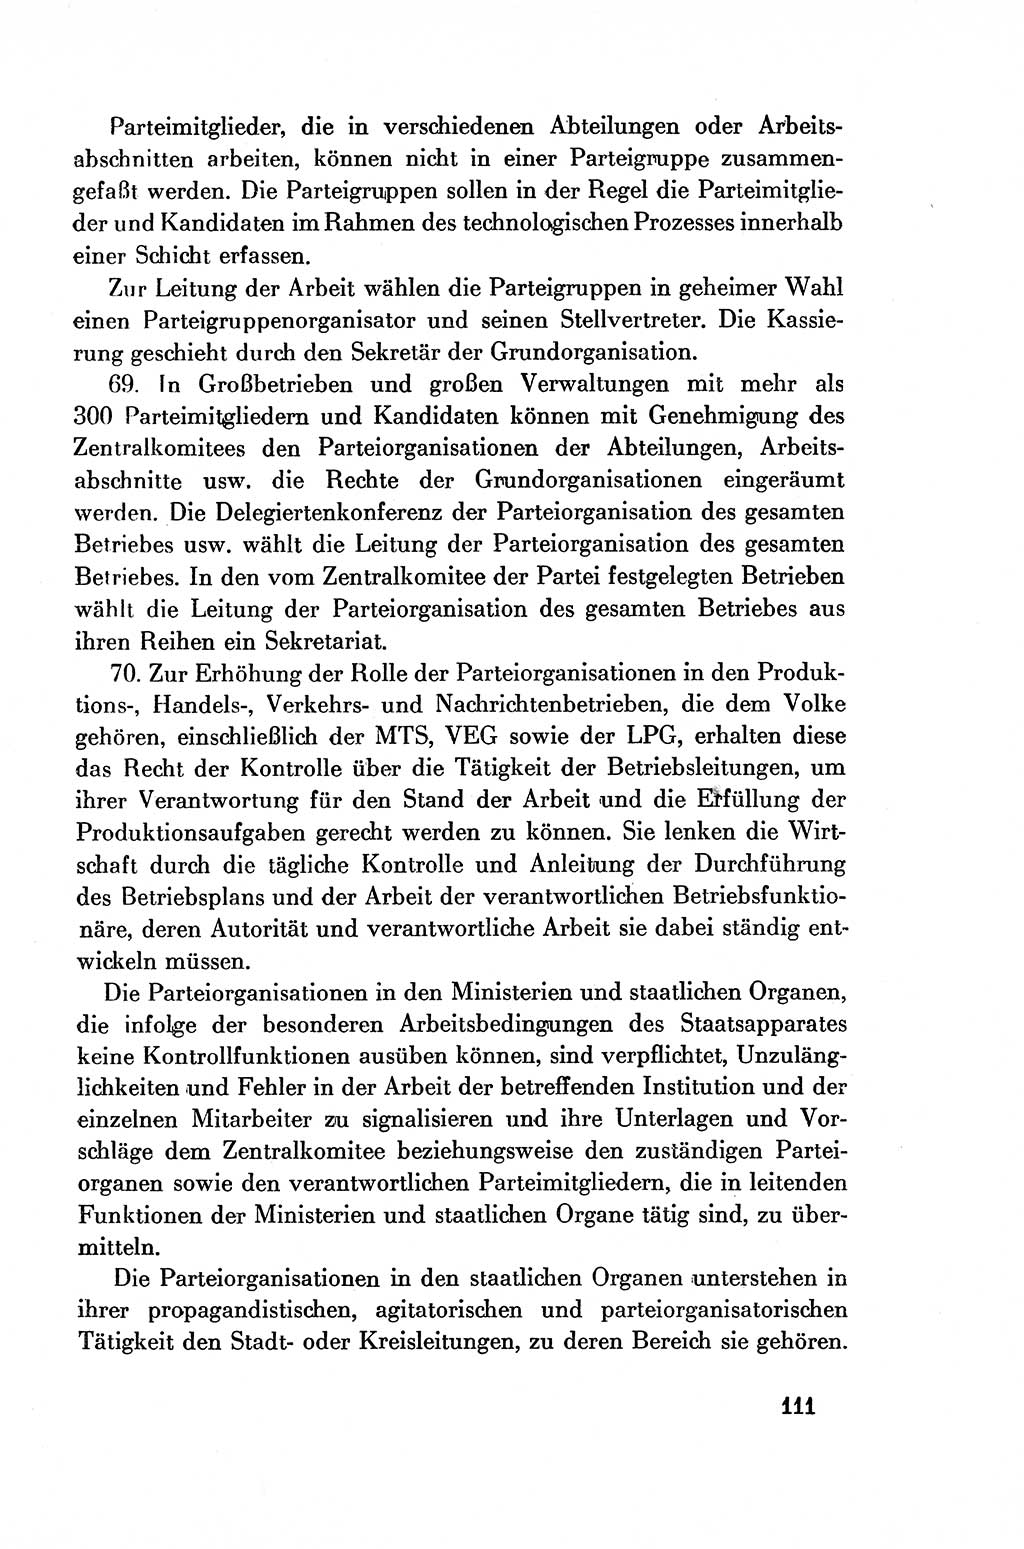 Dokumente der Sozialistischen Einheitspartei Deutschlands (SED) [Deutsche Demokratische Republik (DDR)] 1954-1955, Seite 111 (Dok. SED DDR 1954-1955, S. 111)